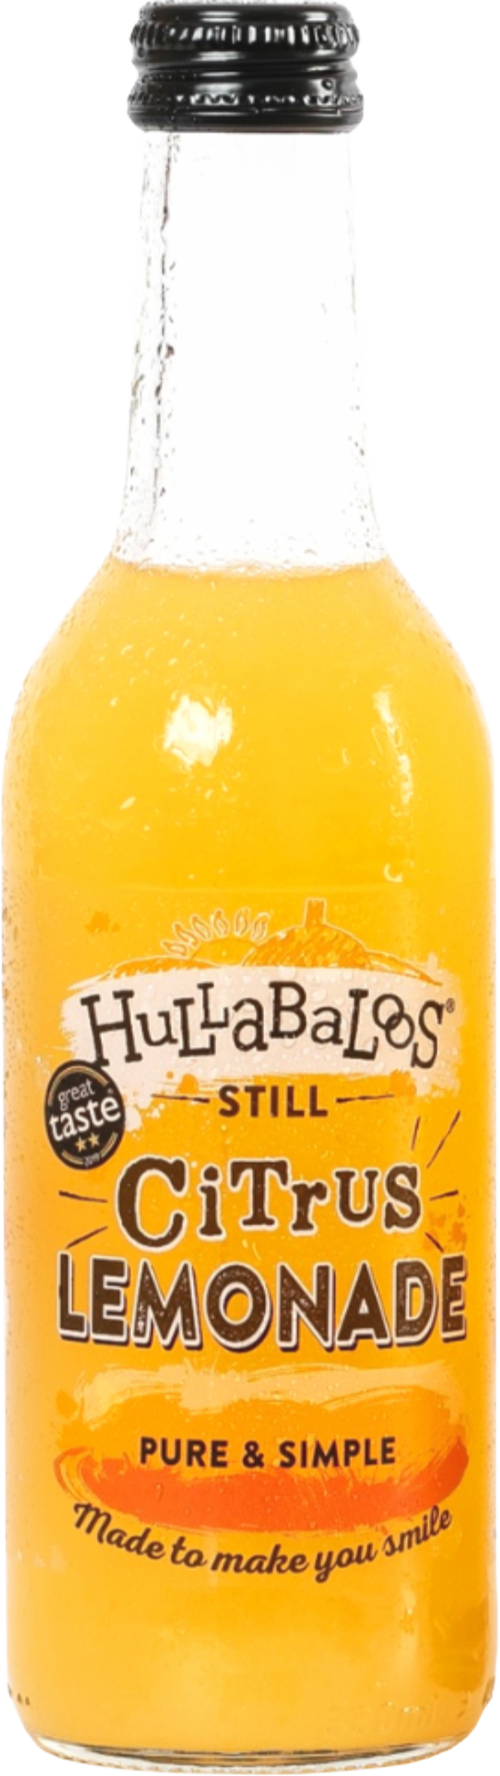 HULLABALOOS Still Citrus Lemonade 330ml